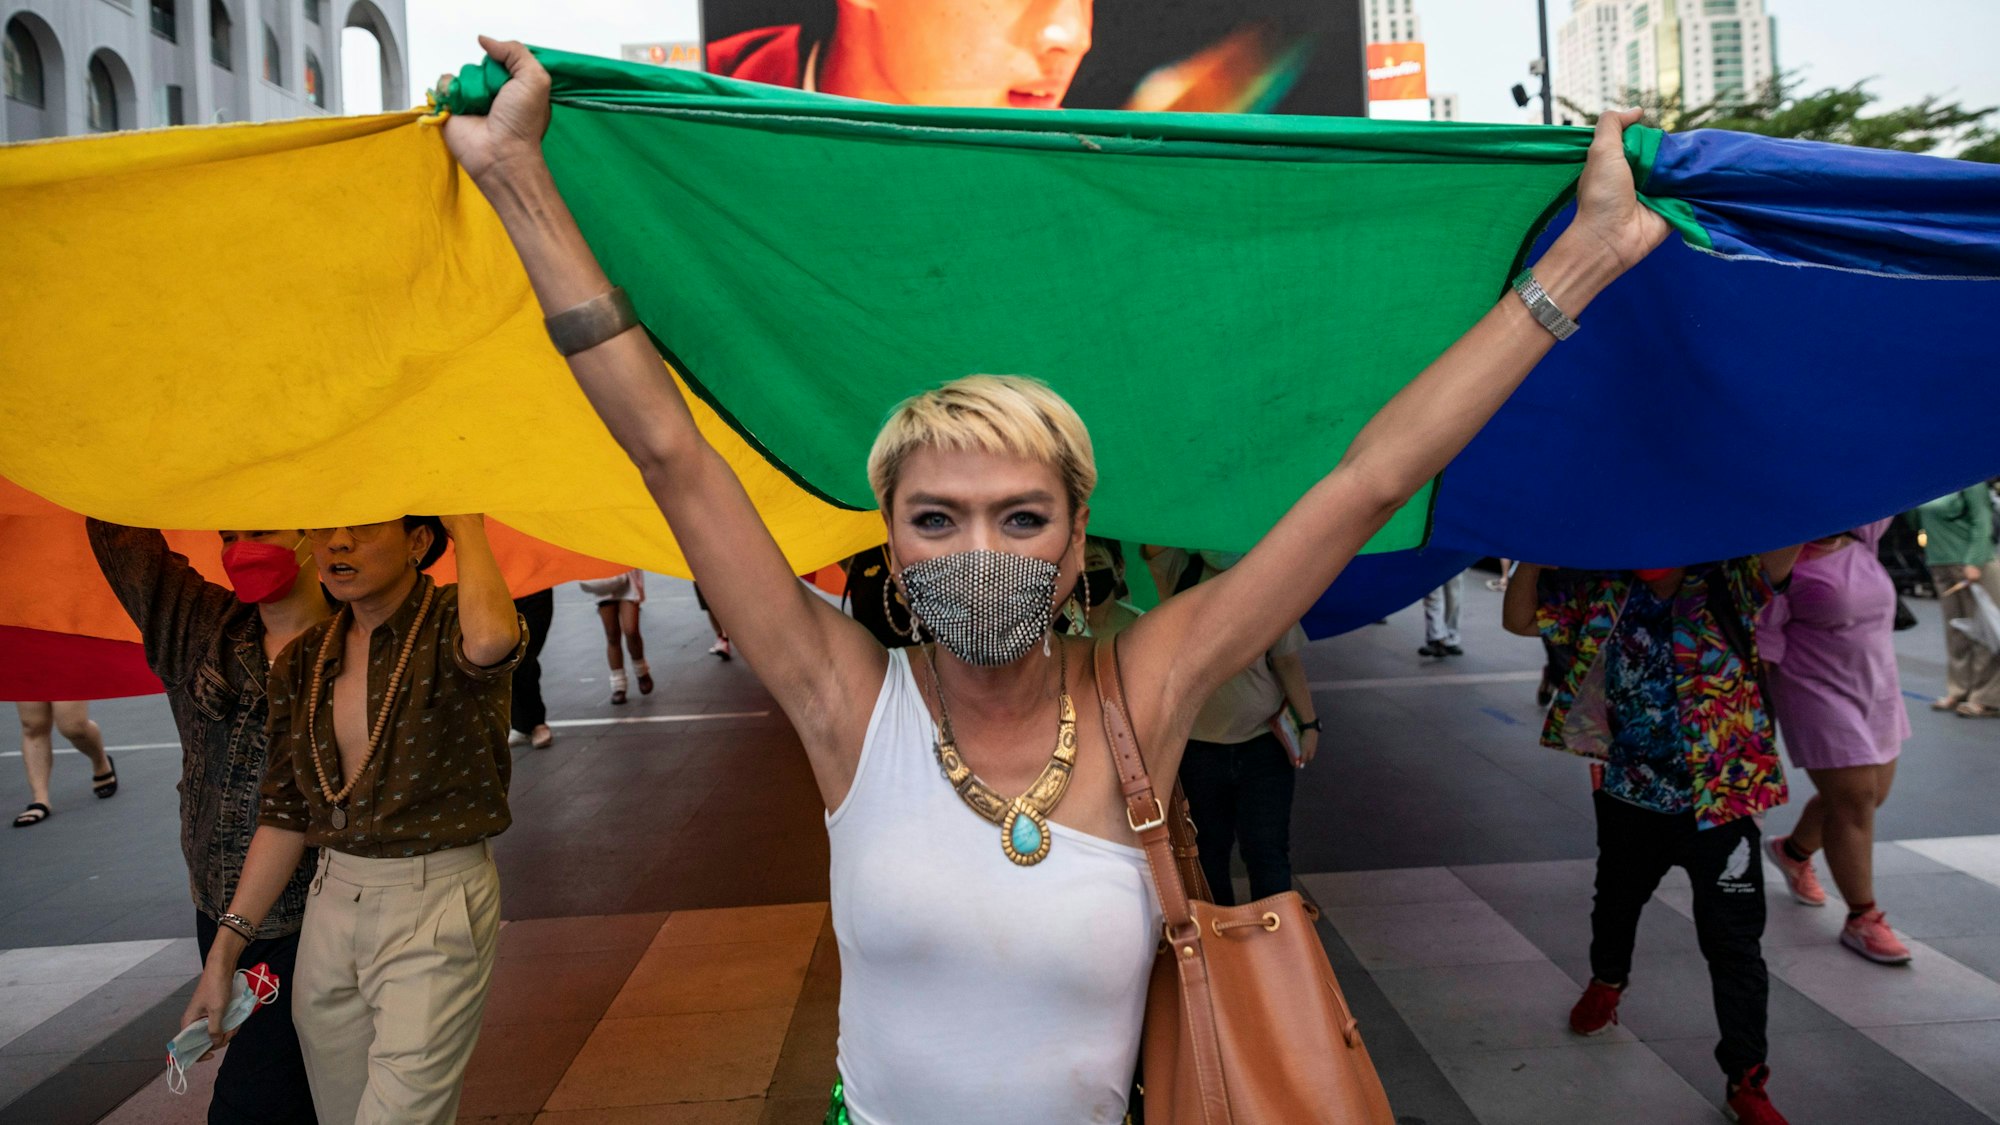 Tata, eine prominente LGBTQ-Aktivistin, protestiert mit der Feminists Liberation Front vor dem Central World am Valentinstag inBangkok.